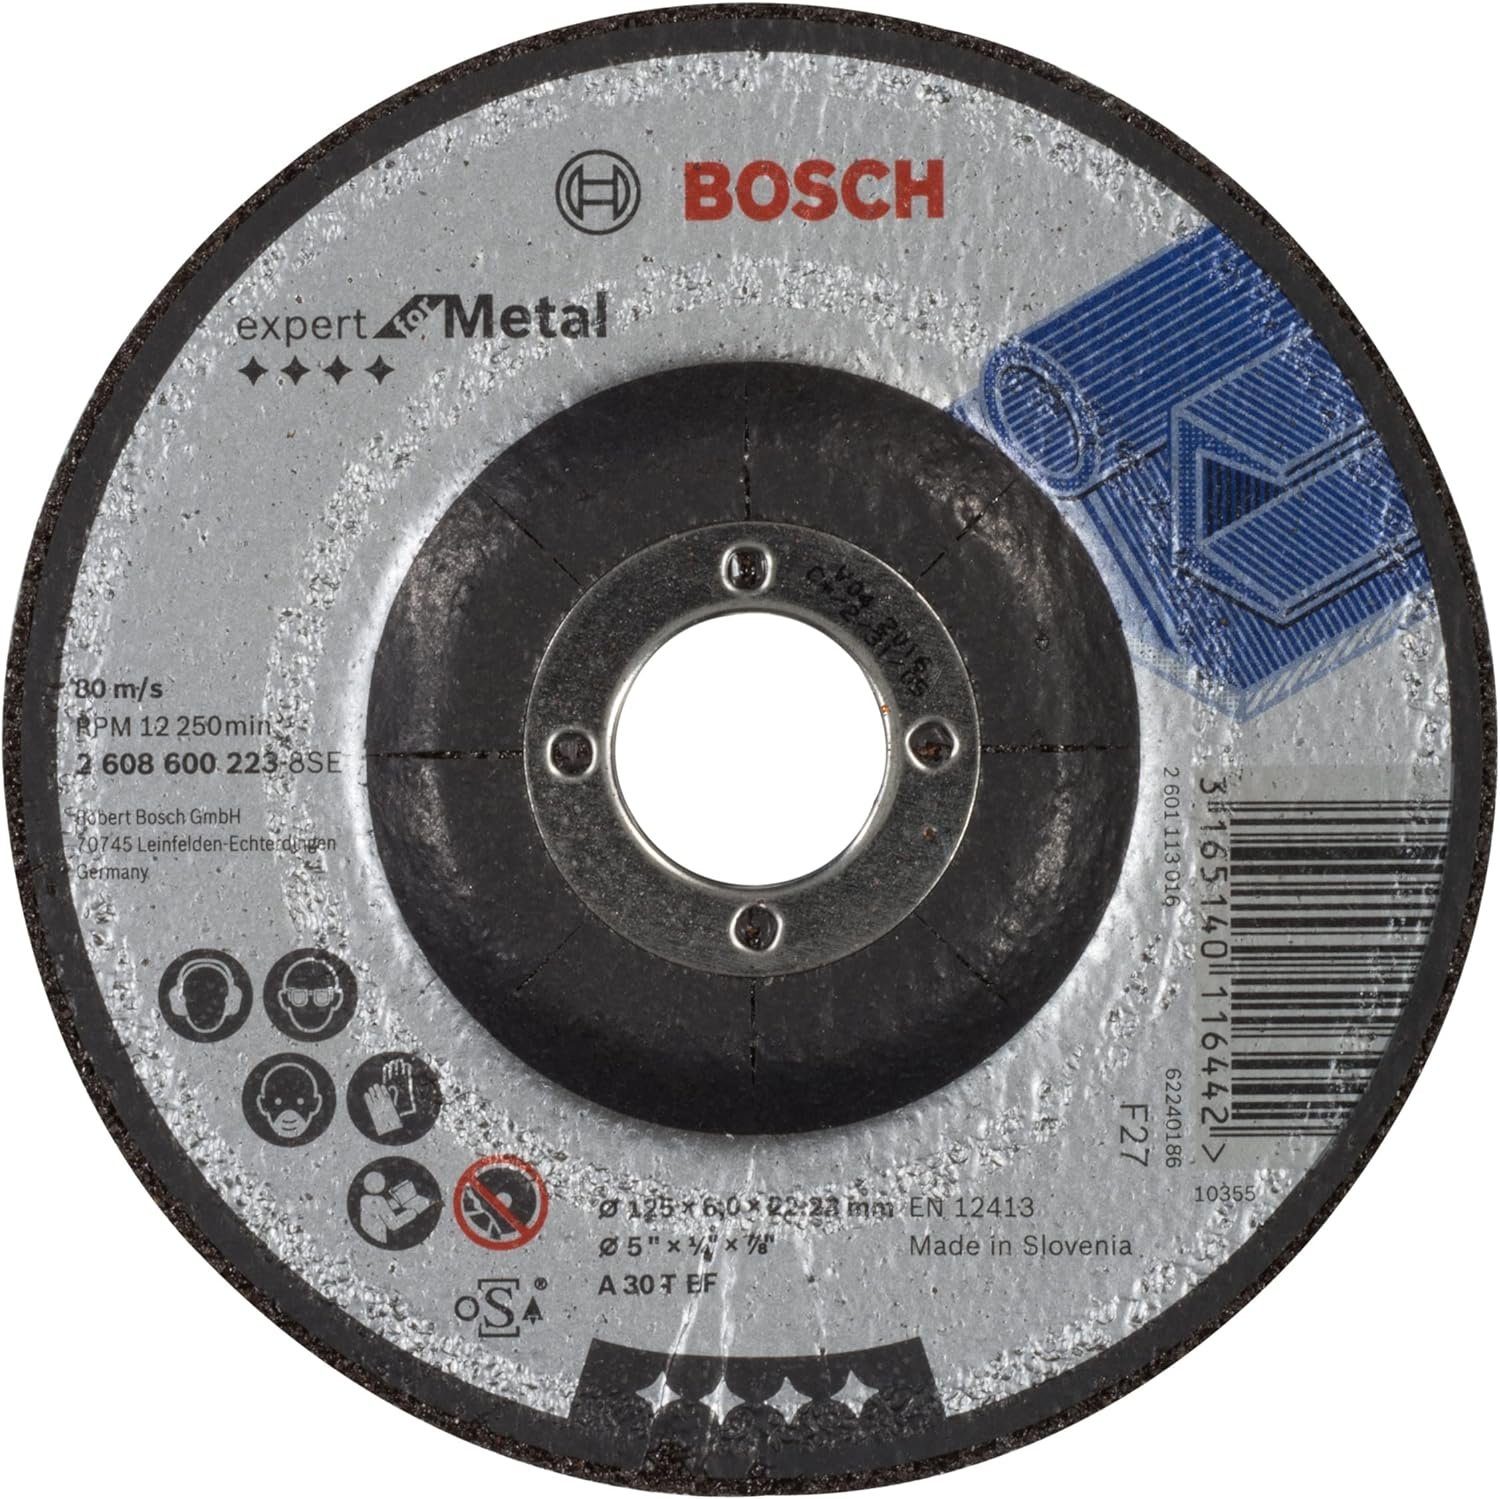 BOSCH Bohrfutter BF Bosch T Expert 125 A mm gekröpft 30 for 4mm Metal Schruppscheibe